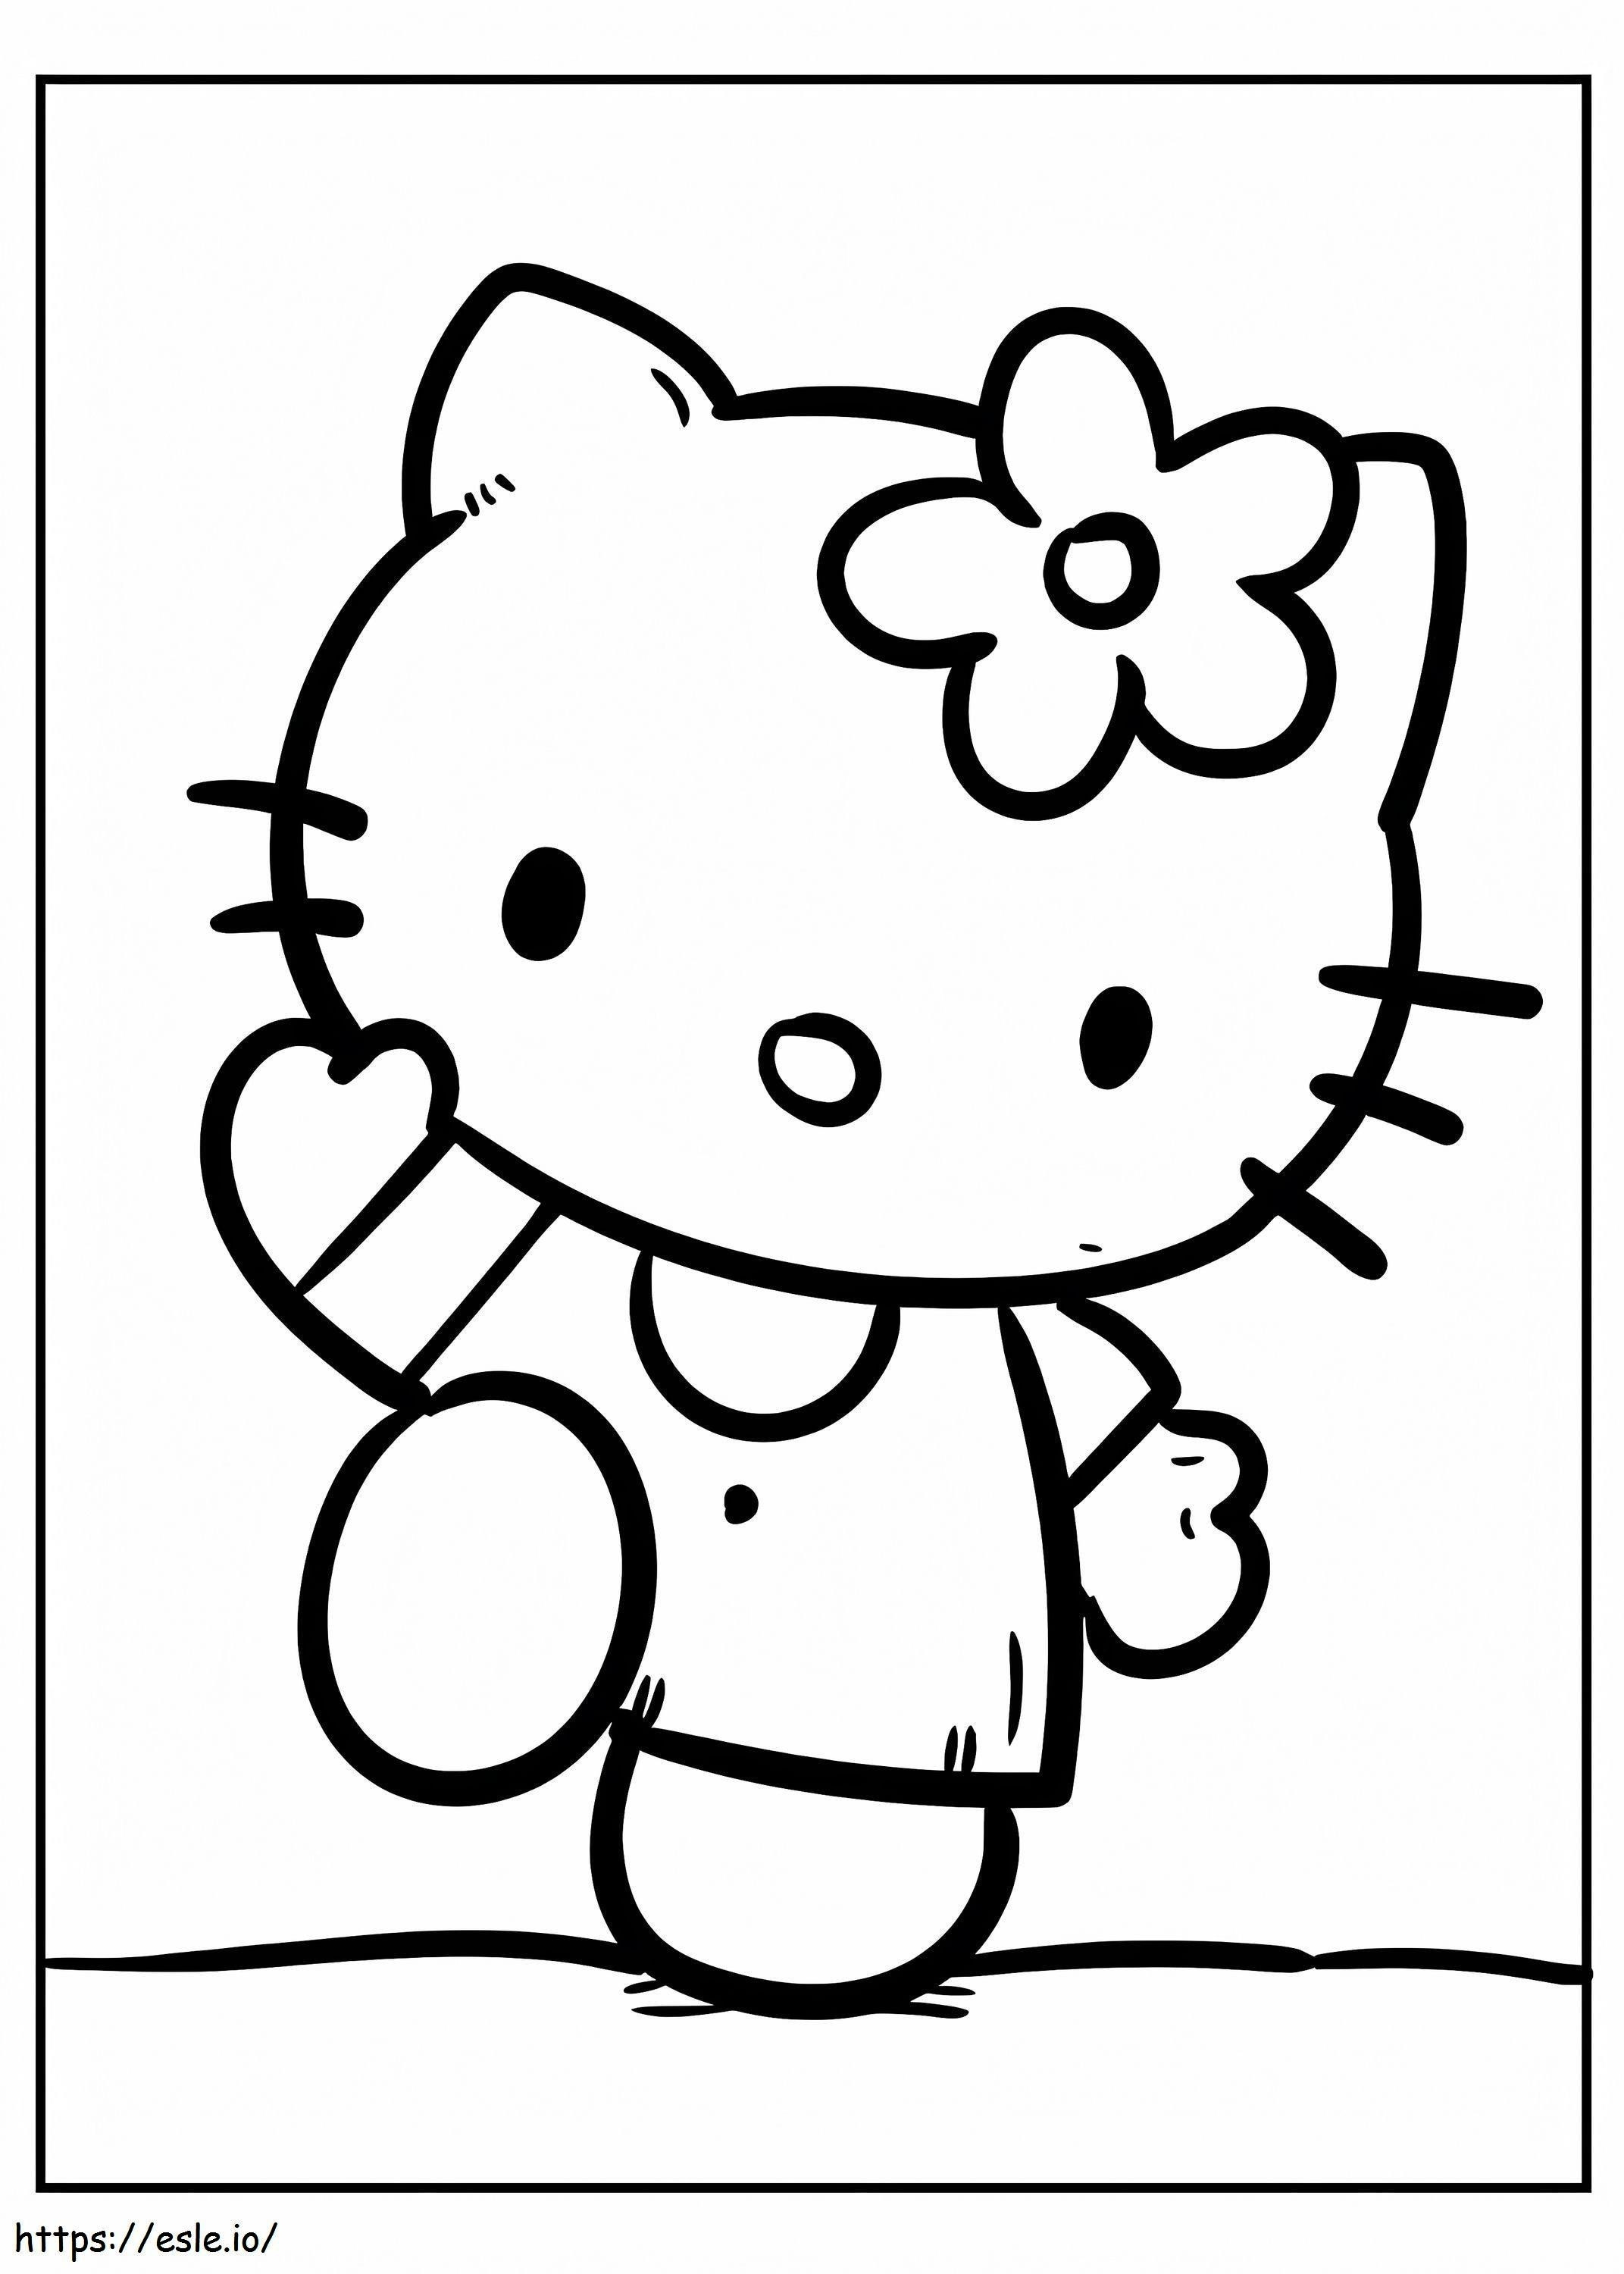 Diversão Criativa com Desenhos da Hello Kitty para Colorir